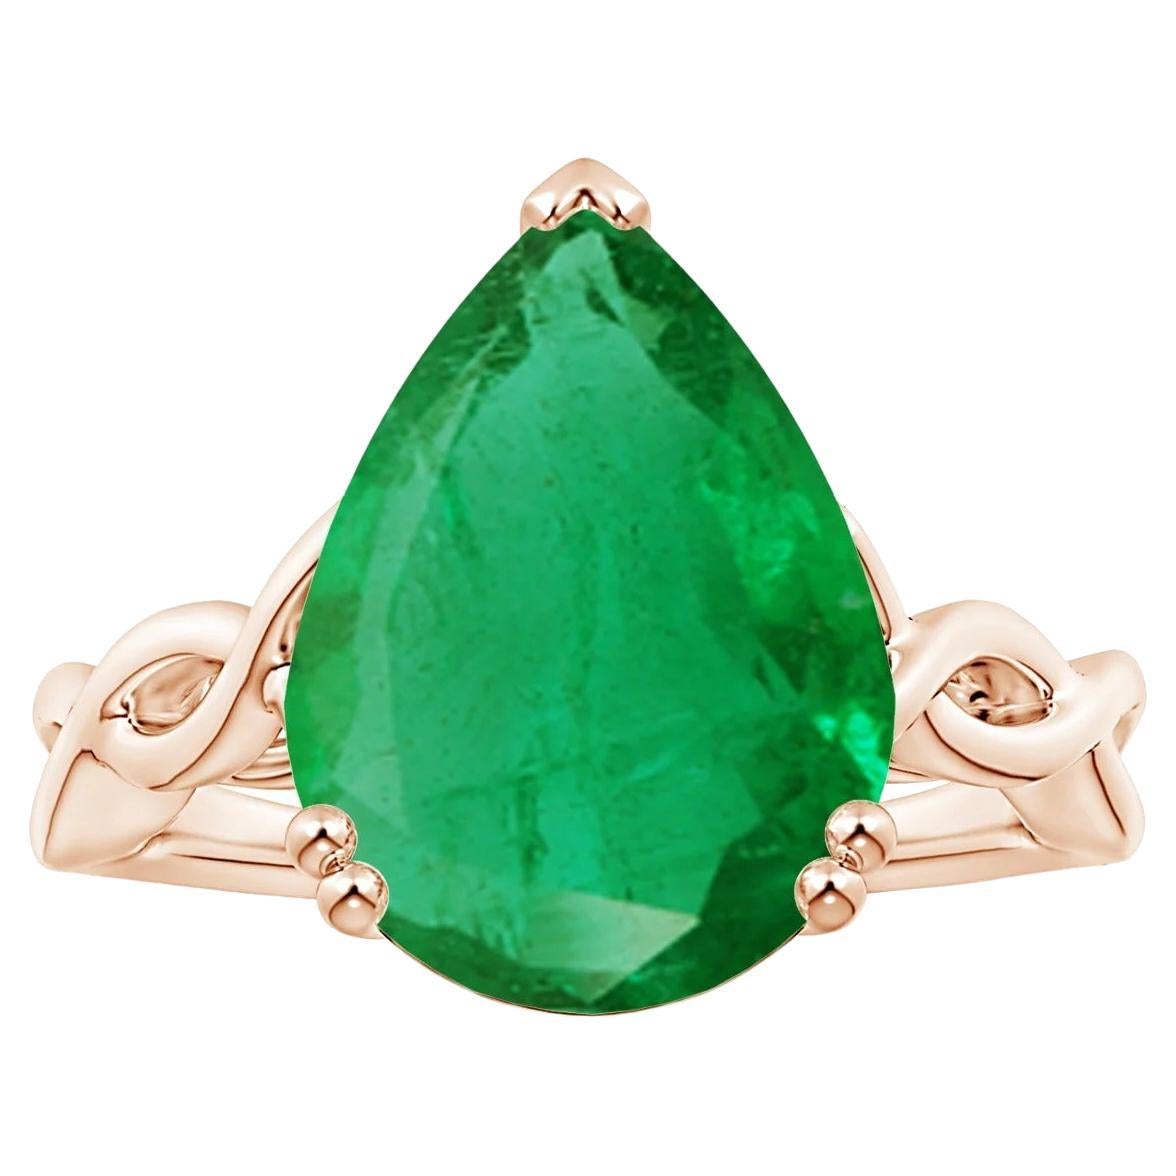 Angara Gia Zertifizierter Solitär-Smaragd-Ring aus Roségold mit gedrehtem Schaft